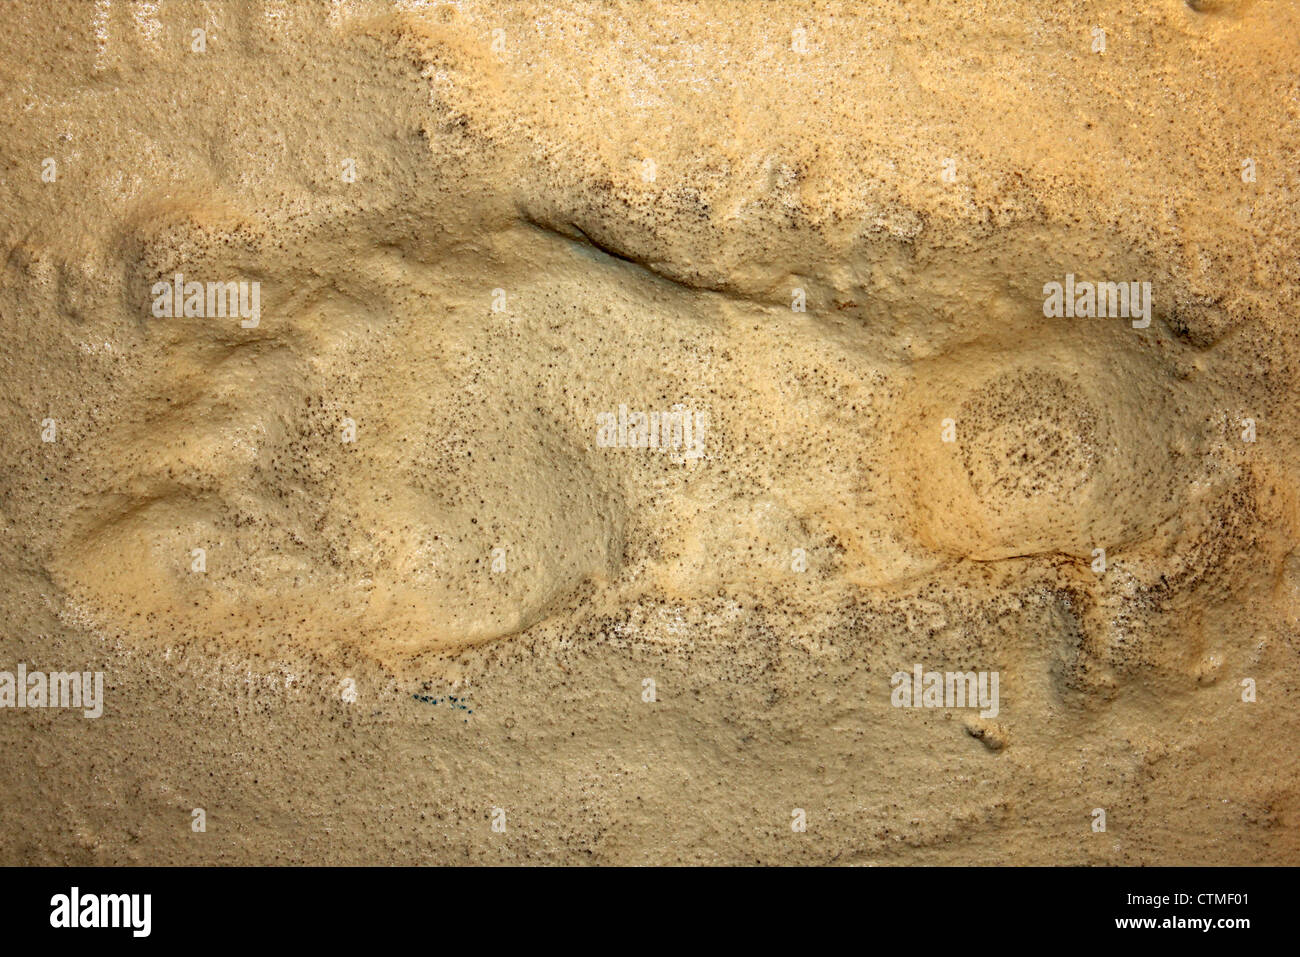 Besetzung von einem menschlichen Fußabdruck im Holozän Sedimente in Formby, Merseyside, England gefunden Stockfoto